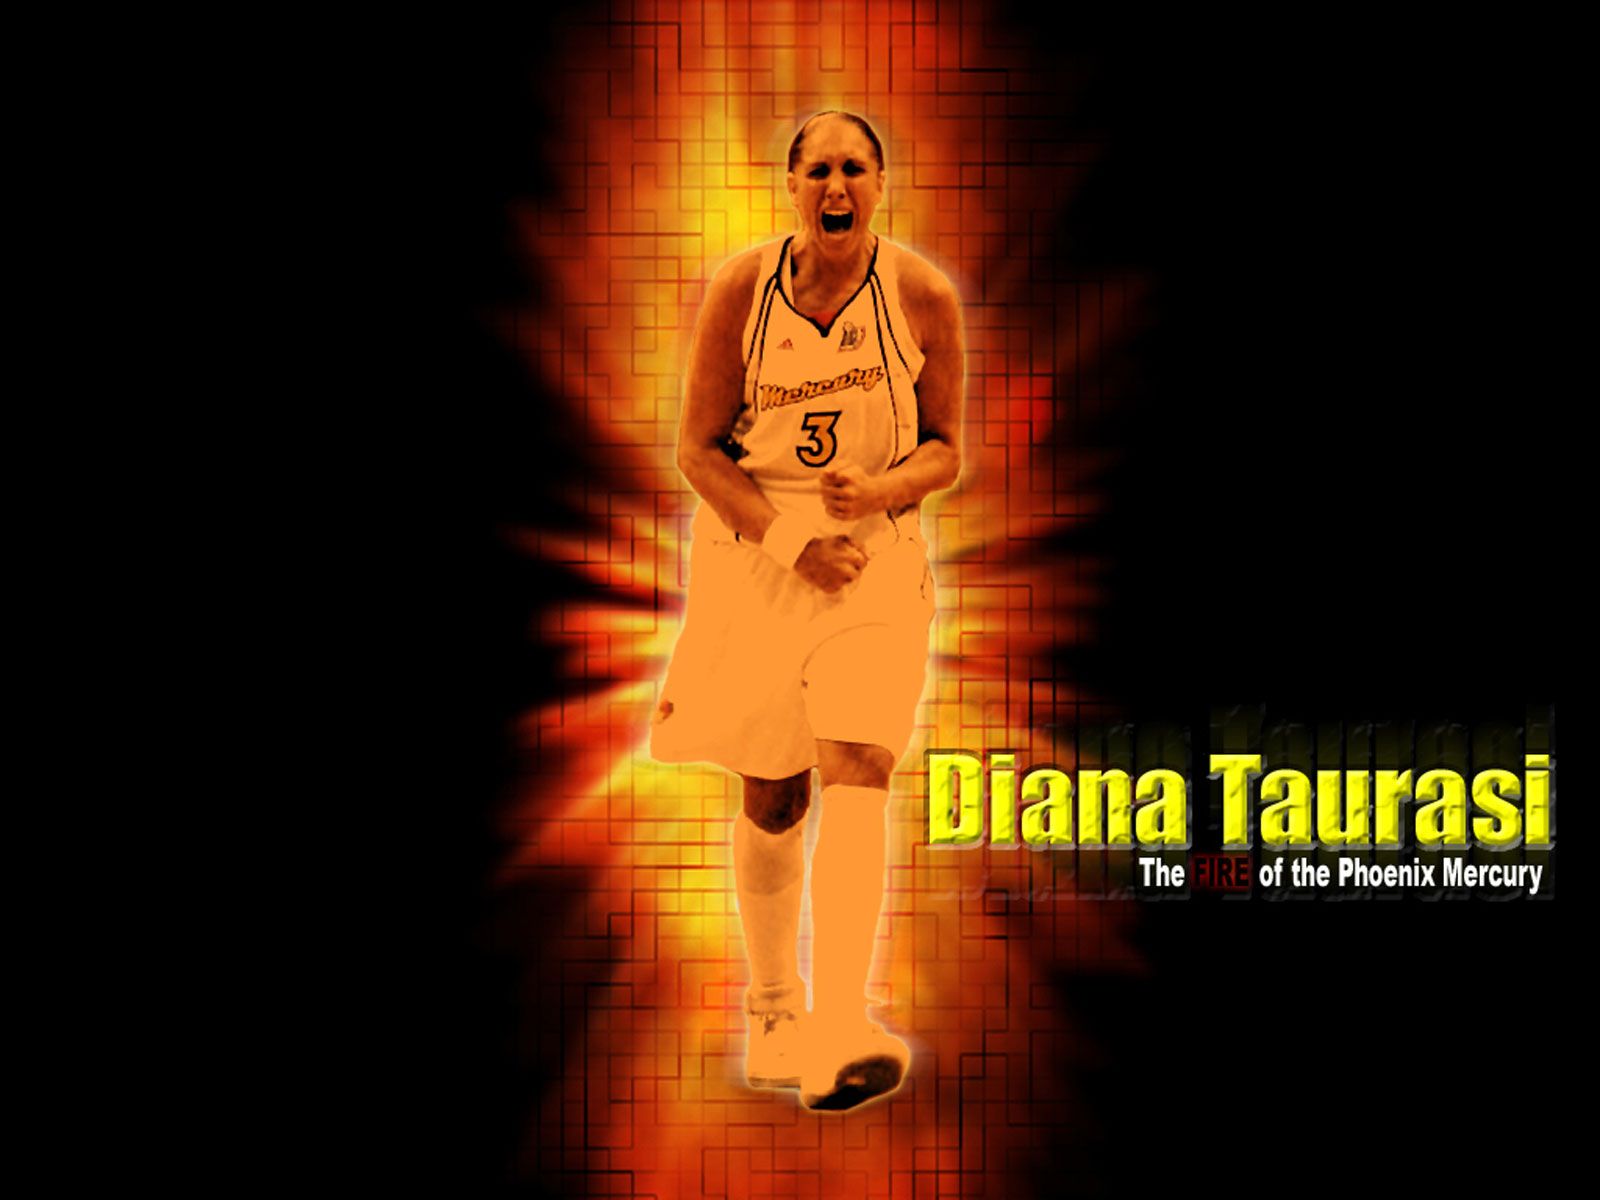 Diana Taurasi Wallpaper | Basketball Wallpapers at ...